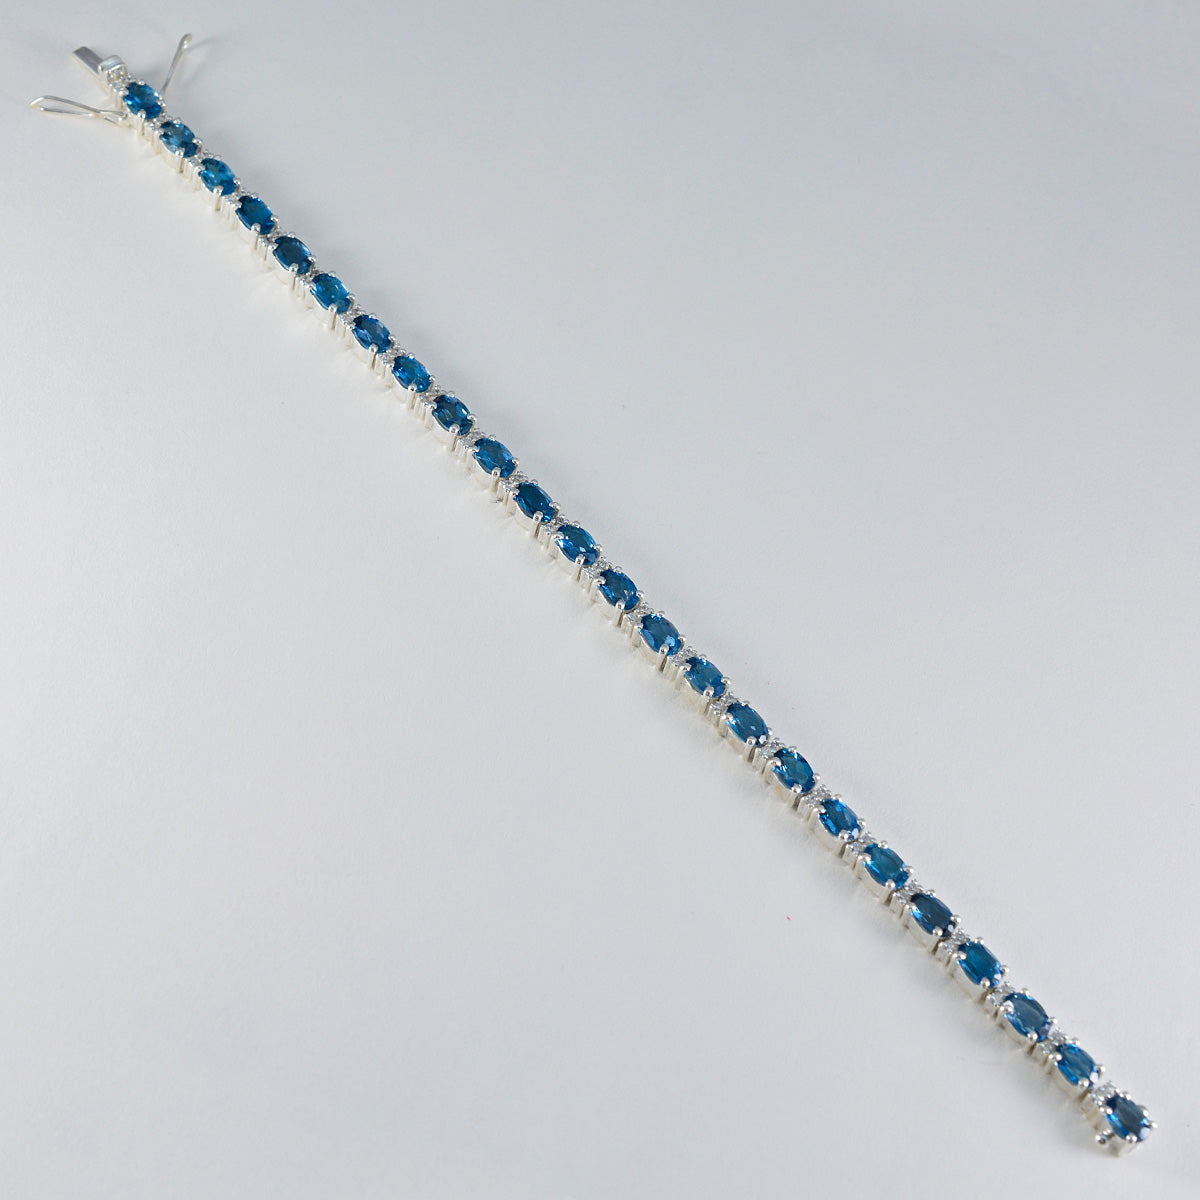 riyo attraktiva 925 sterling silver armband för kvinnor blå topas armband stift inställning armband med låda med tunga tennis armband l storlek 6-8,5 tum.